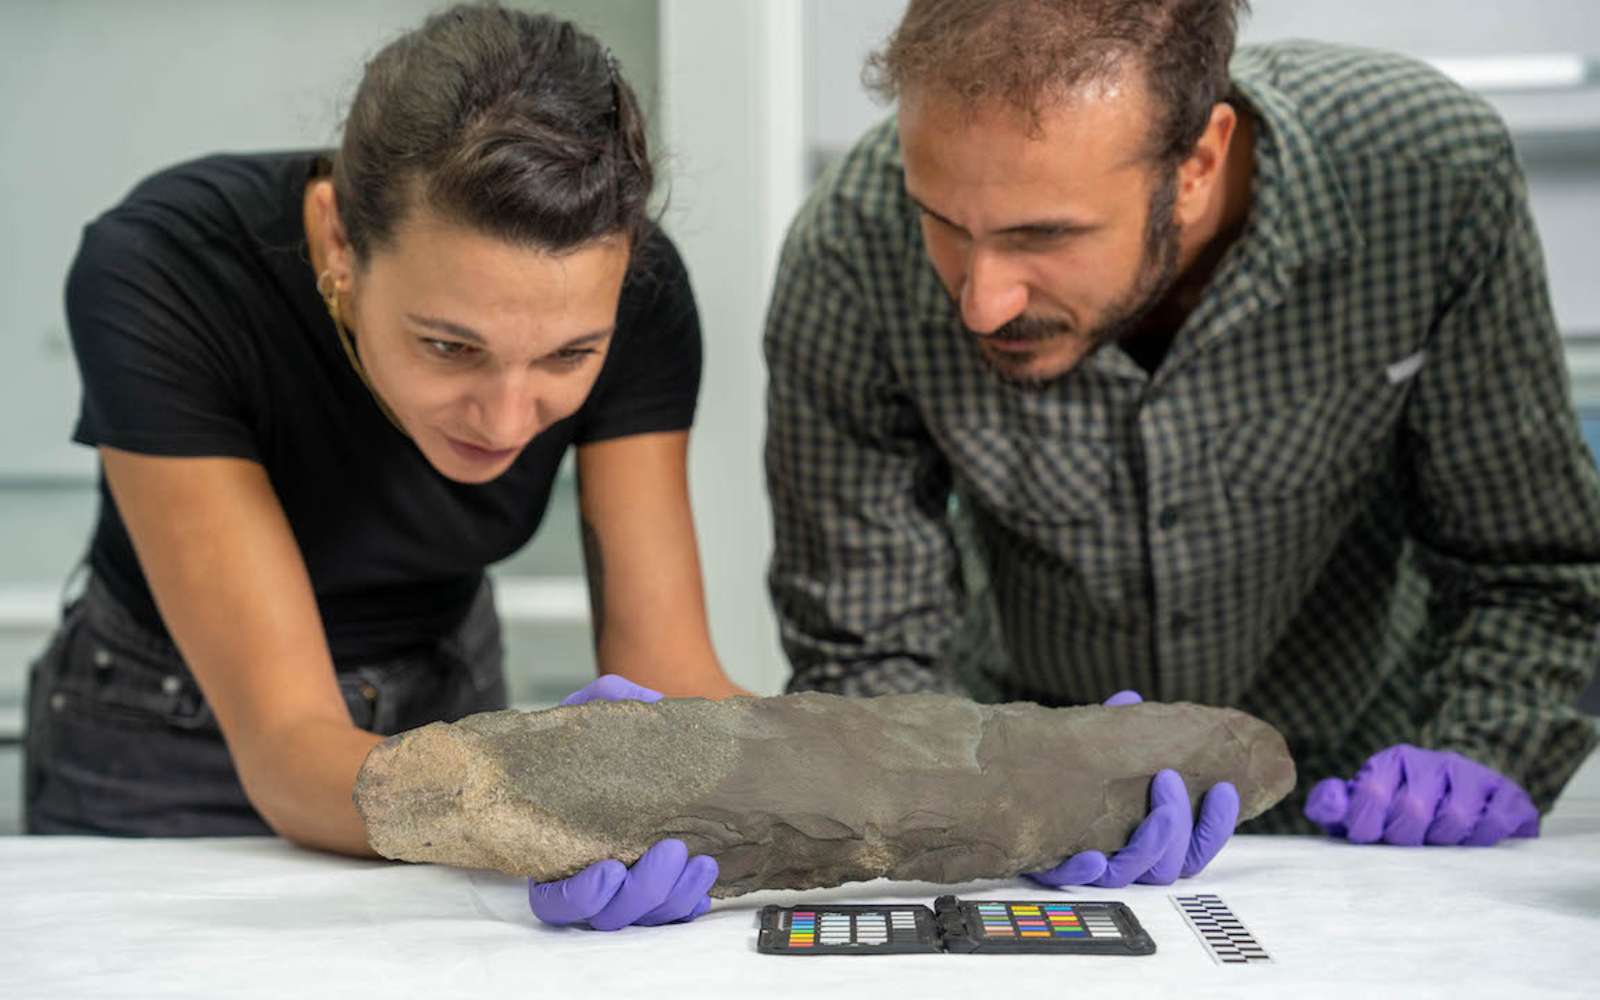 Découverte exceptionnelle d'une hache massive de 51 cm vieille de 200 000 ans !